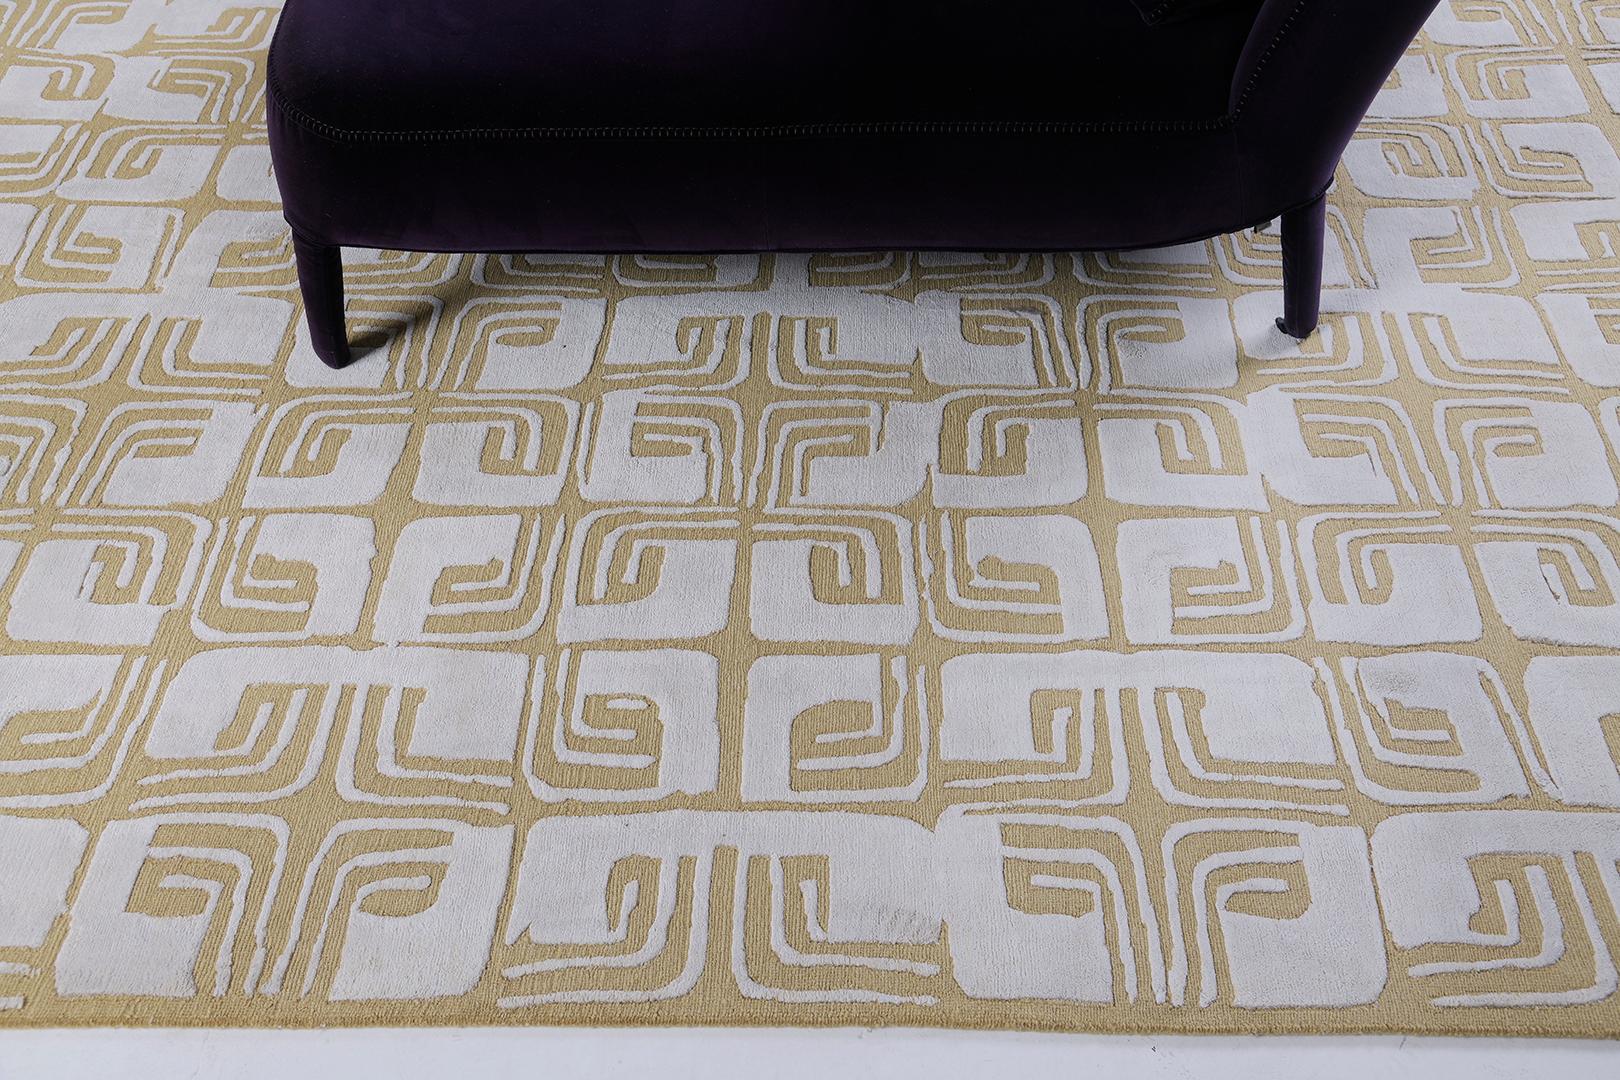 Un labyrinthe fleuri répété en soie argentée et laine dorée chatoyante. La construction du tapis Anika associe une texture en boucle à une soie somptueusement agréable au toucher.

Numéro de tapis
29755
Taille
9' 0